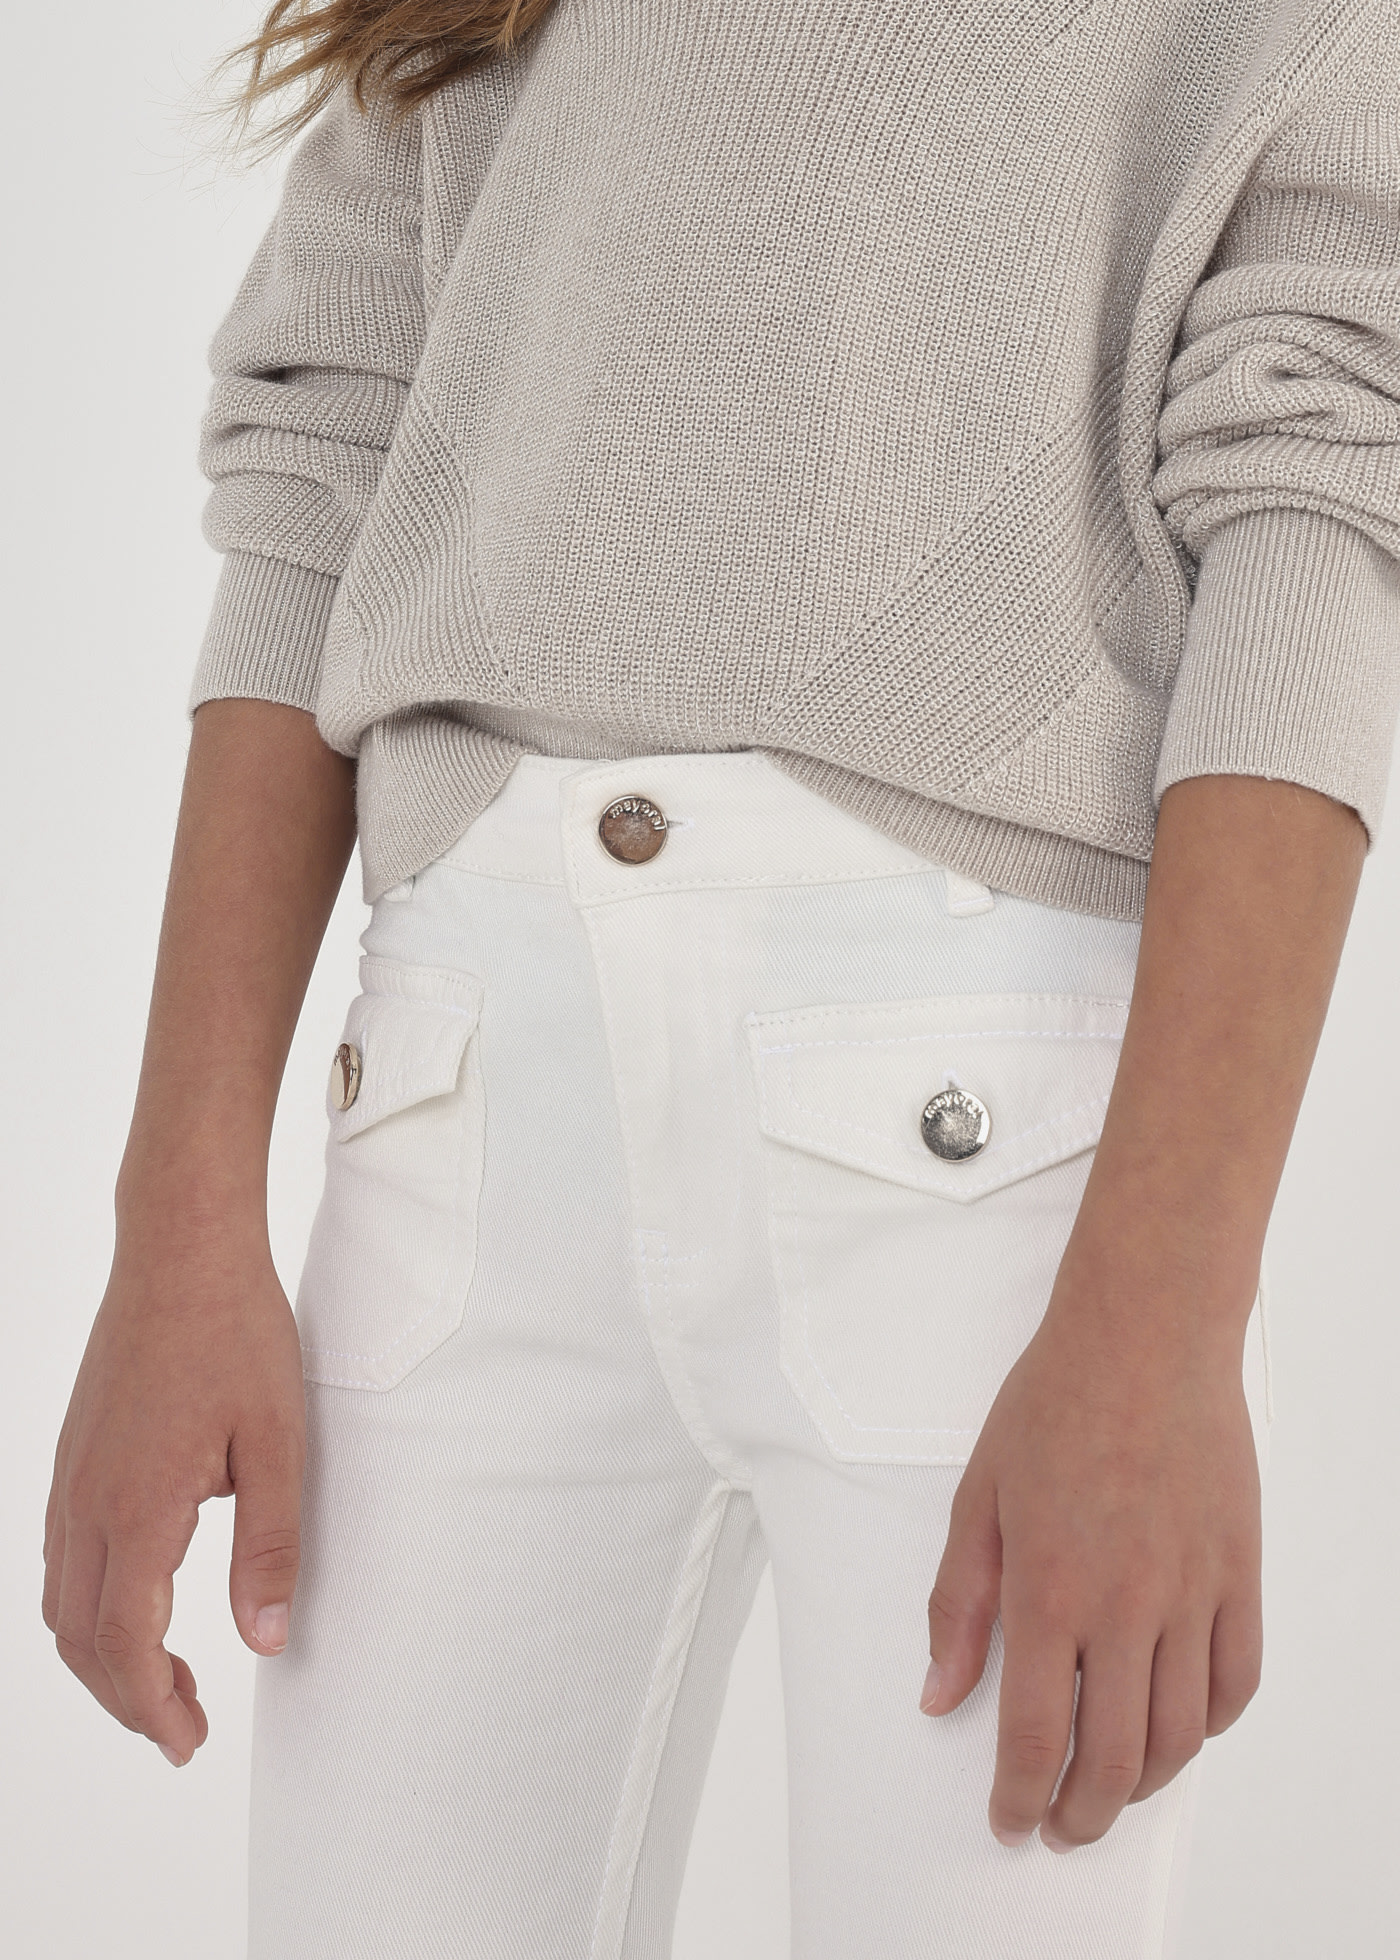 Cropped Hose aus nachhaltiger Baumwolle Teenager Mädchen